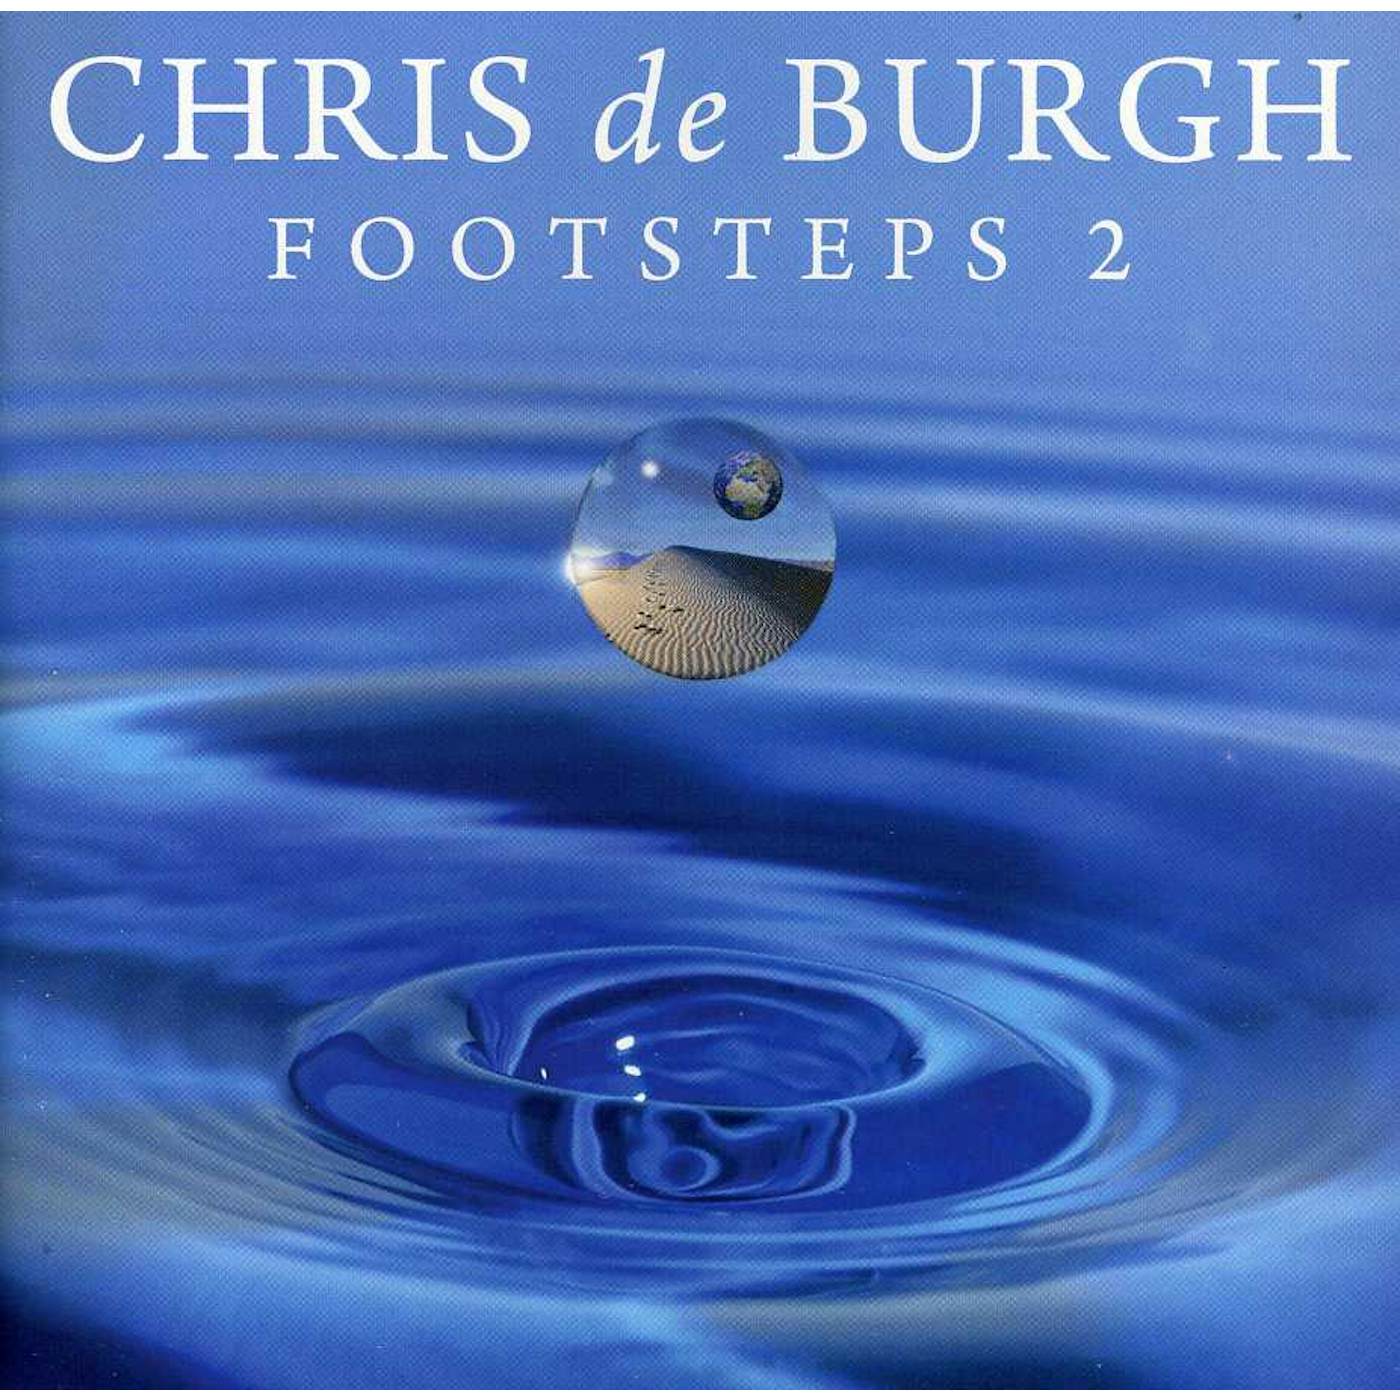 Chris de Burgh V2 FOOTSTEPS CD